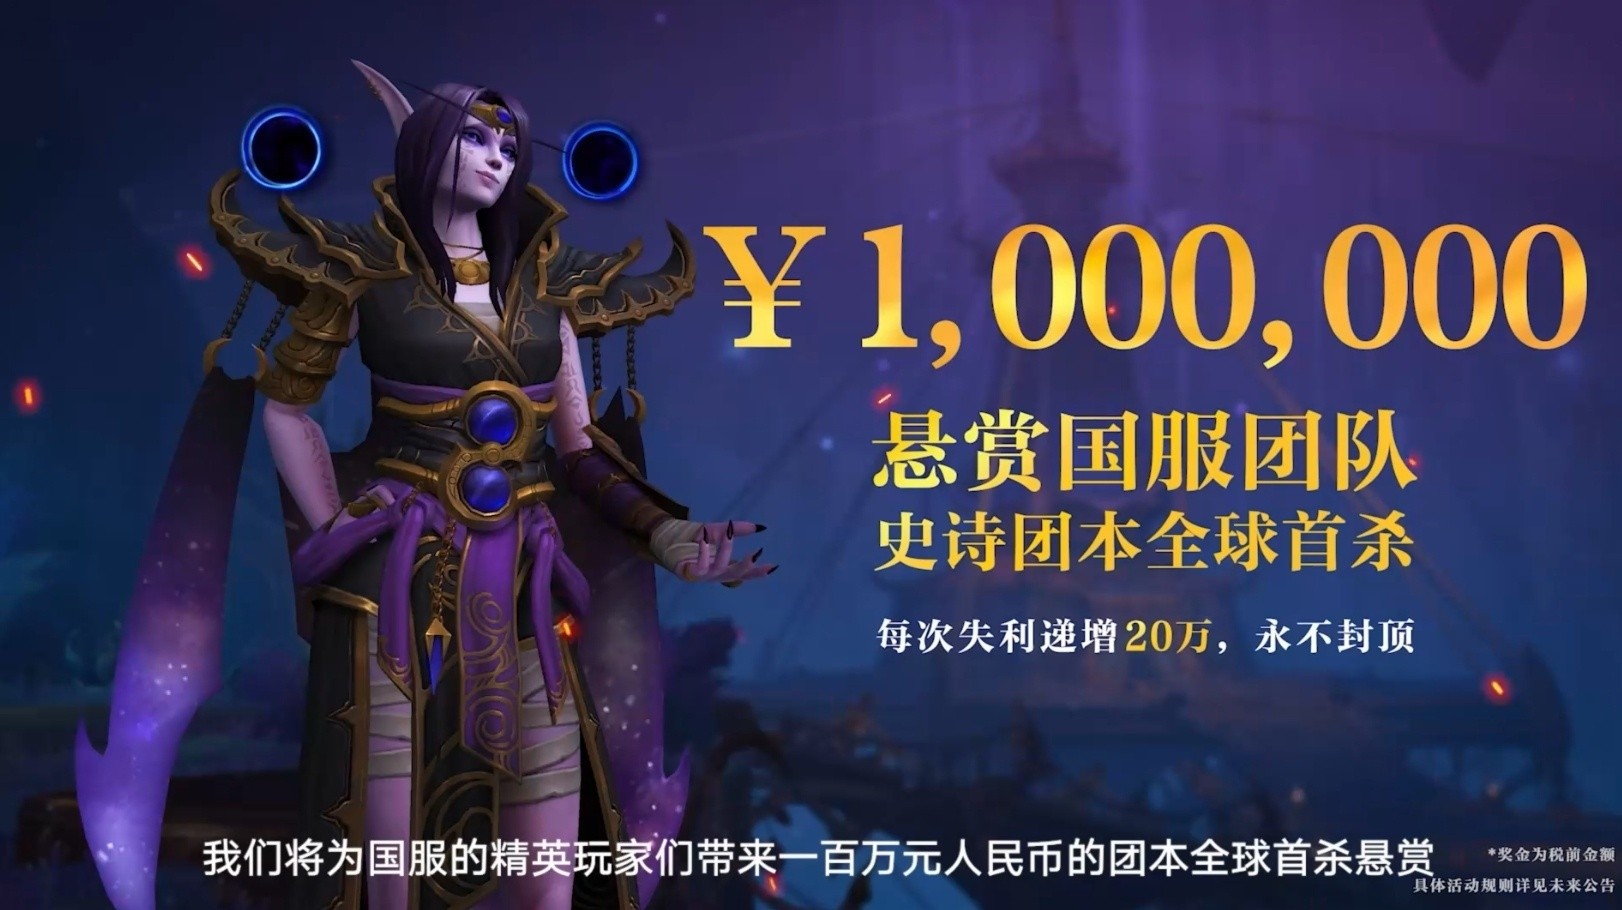 World of Warcraft wróci do Chin 1 sierpnia z niezłą ofertą